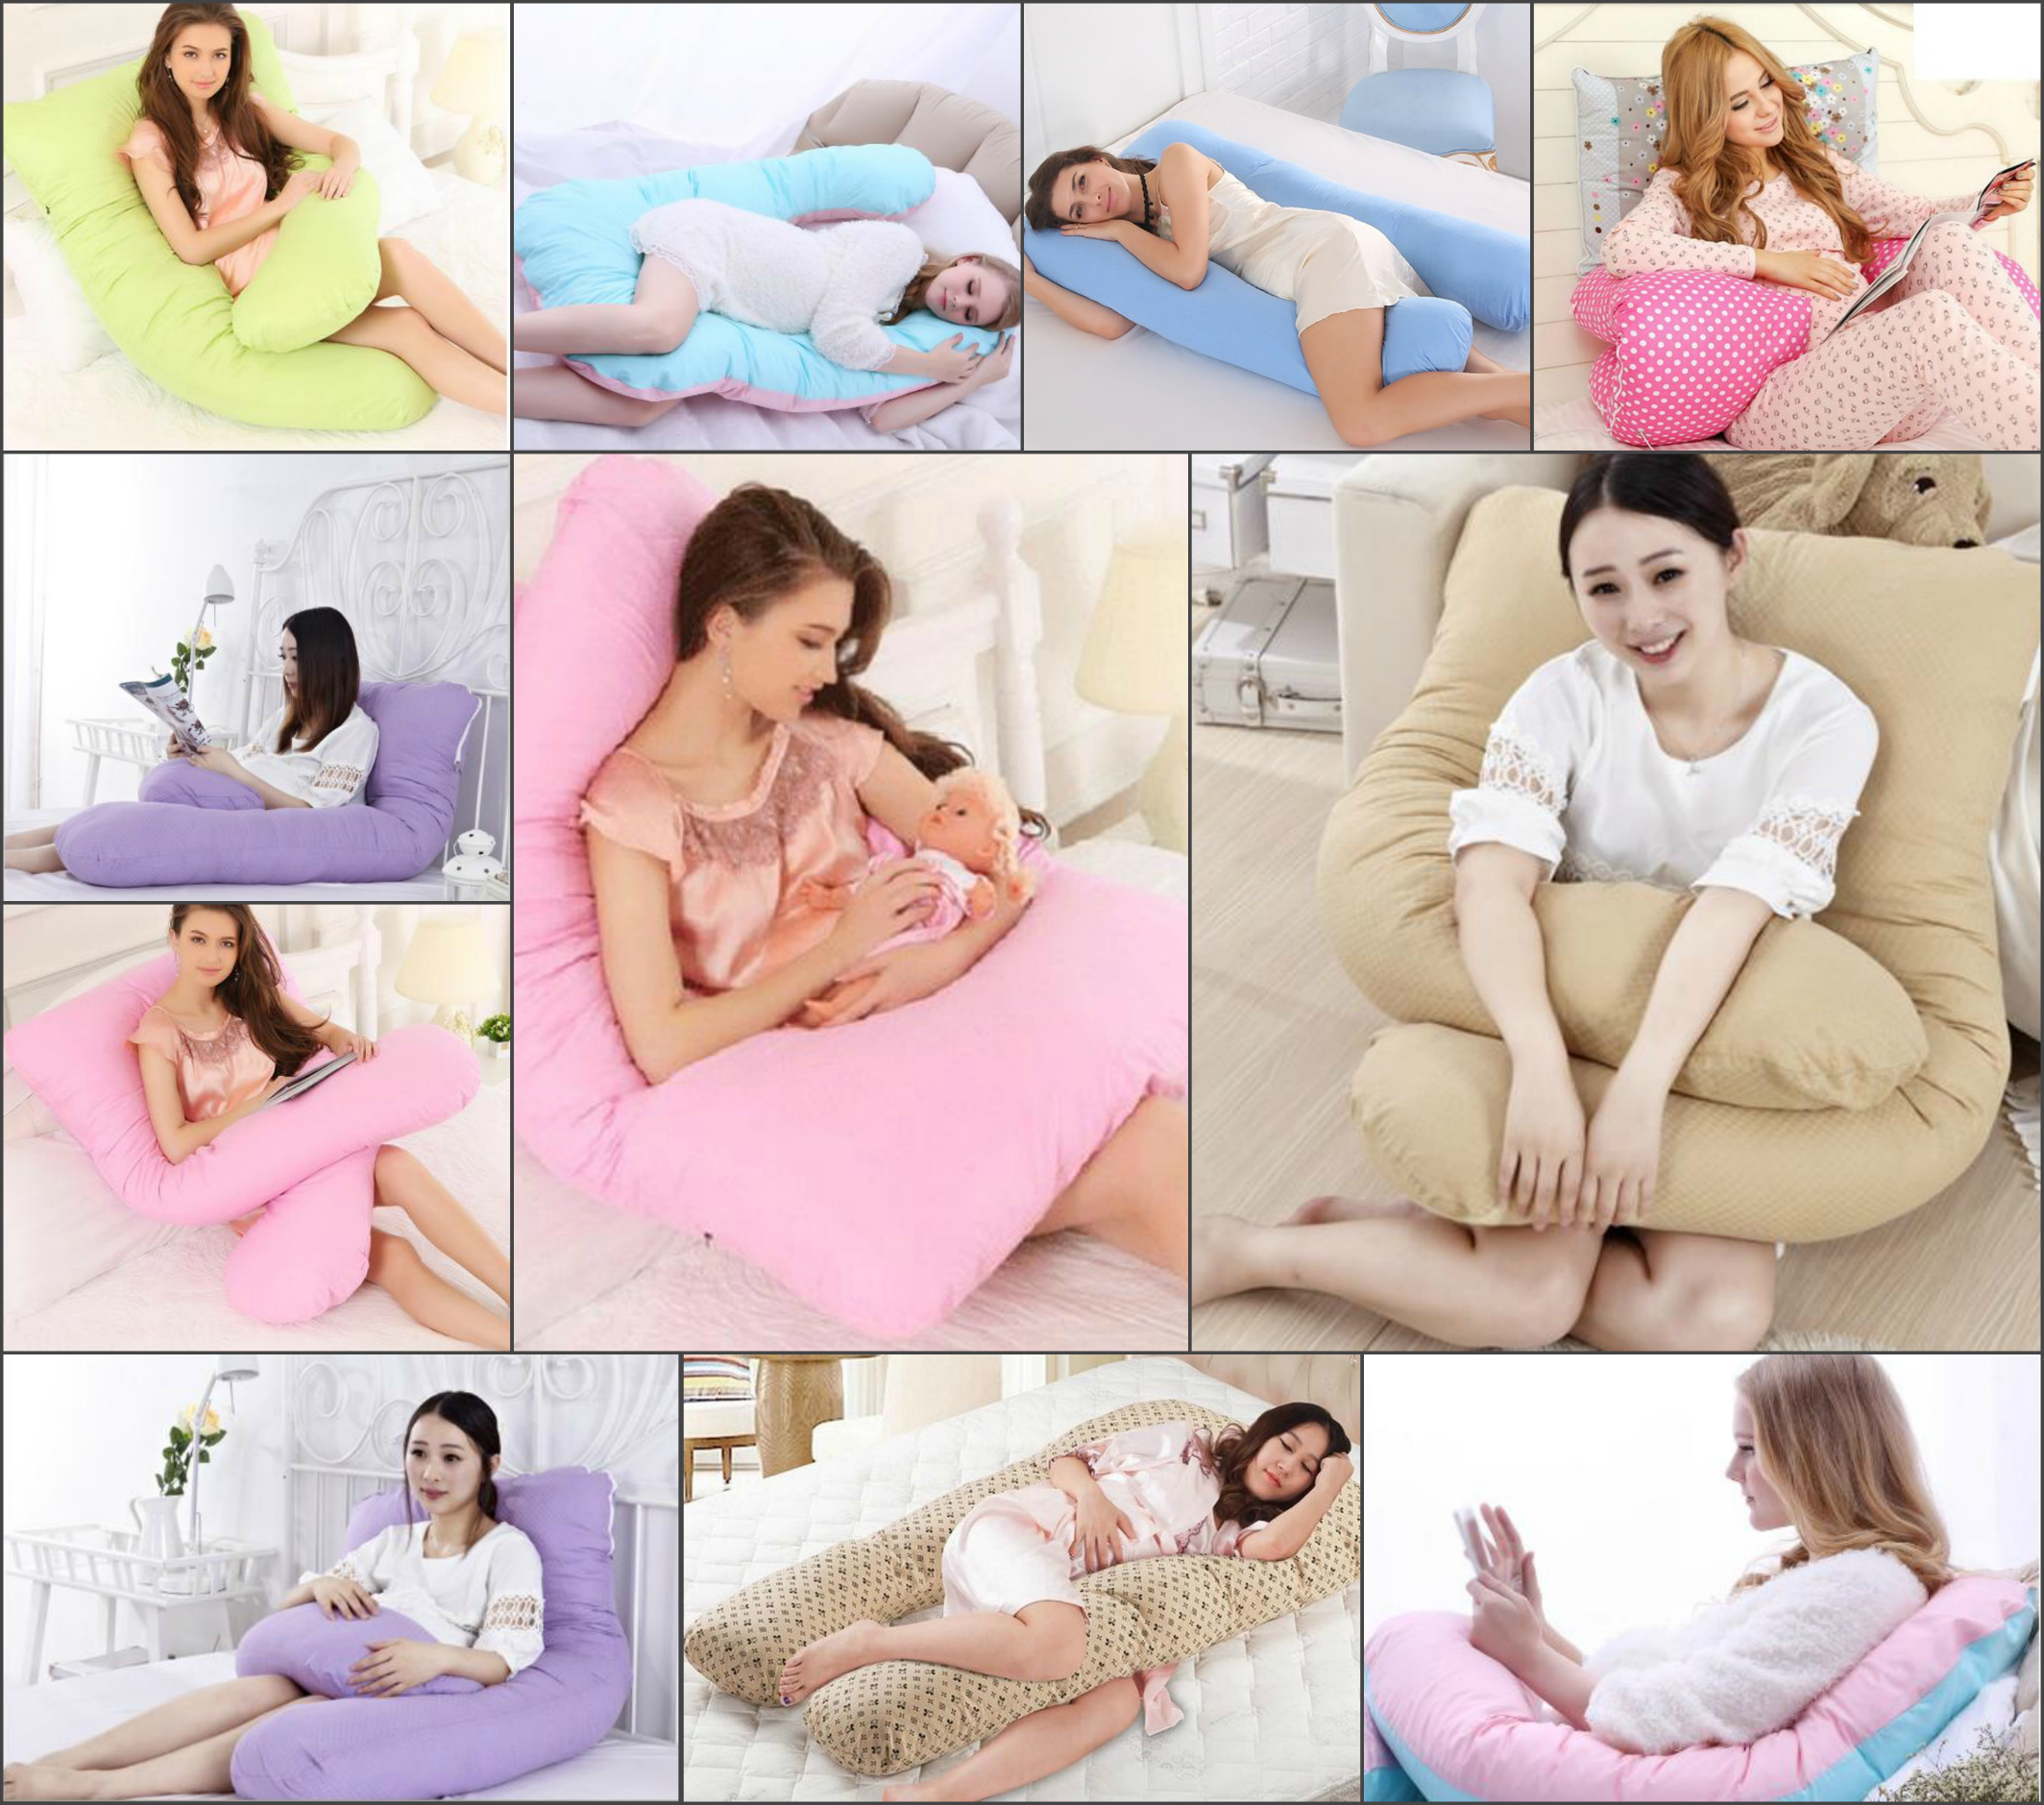 Как пользоваться подушкой для беременных. Позы для кормления с подушкой для беременных. Подушка для беременных варианты использования. Позы с использованием подушки. Подушка для беременных как пользоваться.